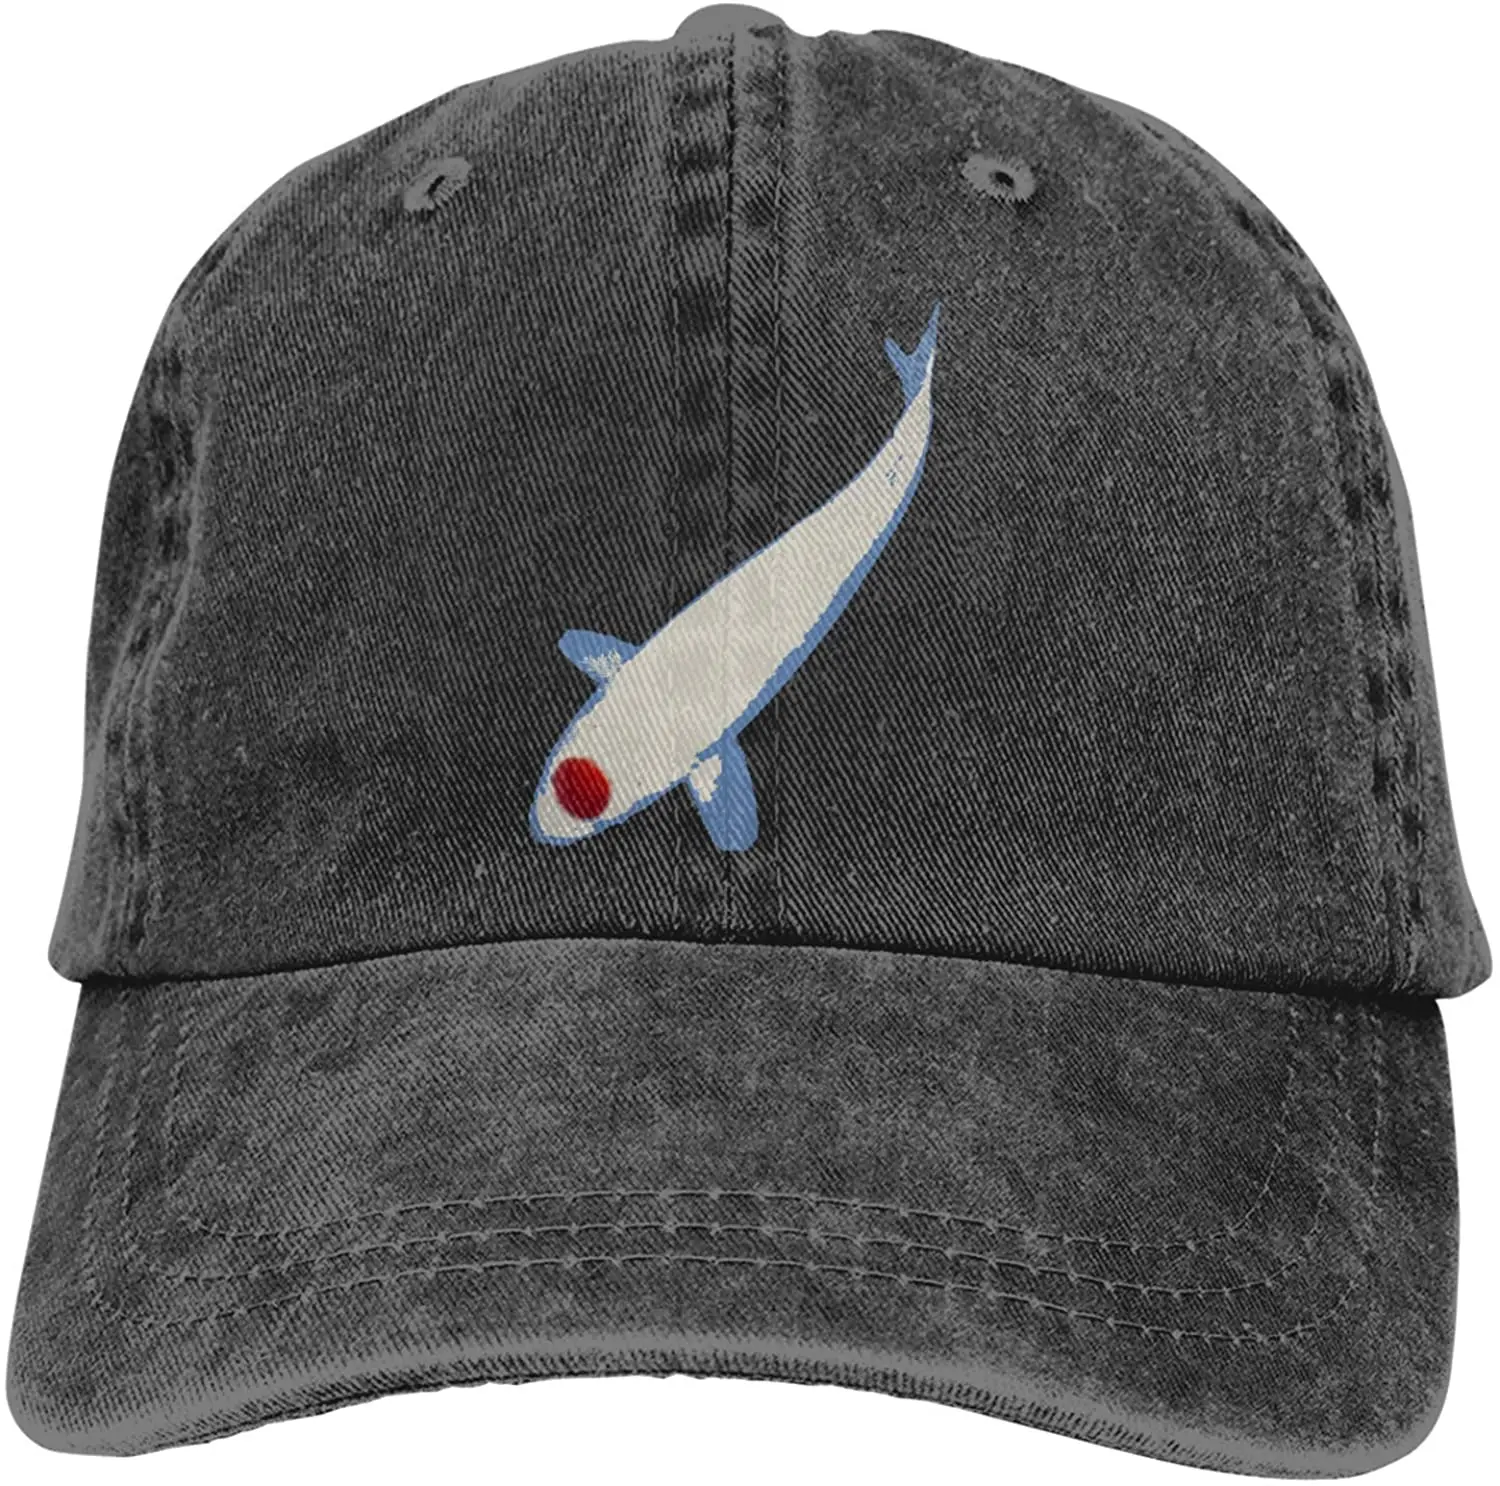 

Japan Koi Carp Fish Sports Denim Cap Adjustable Unisex Plain Baseball Cowboy Snapback Hat